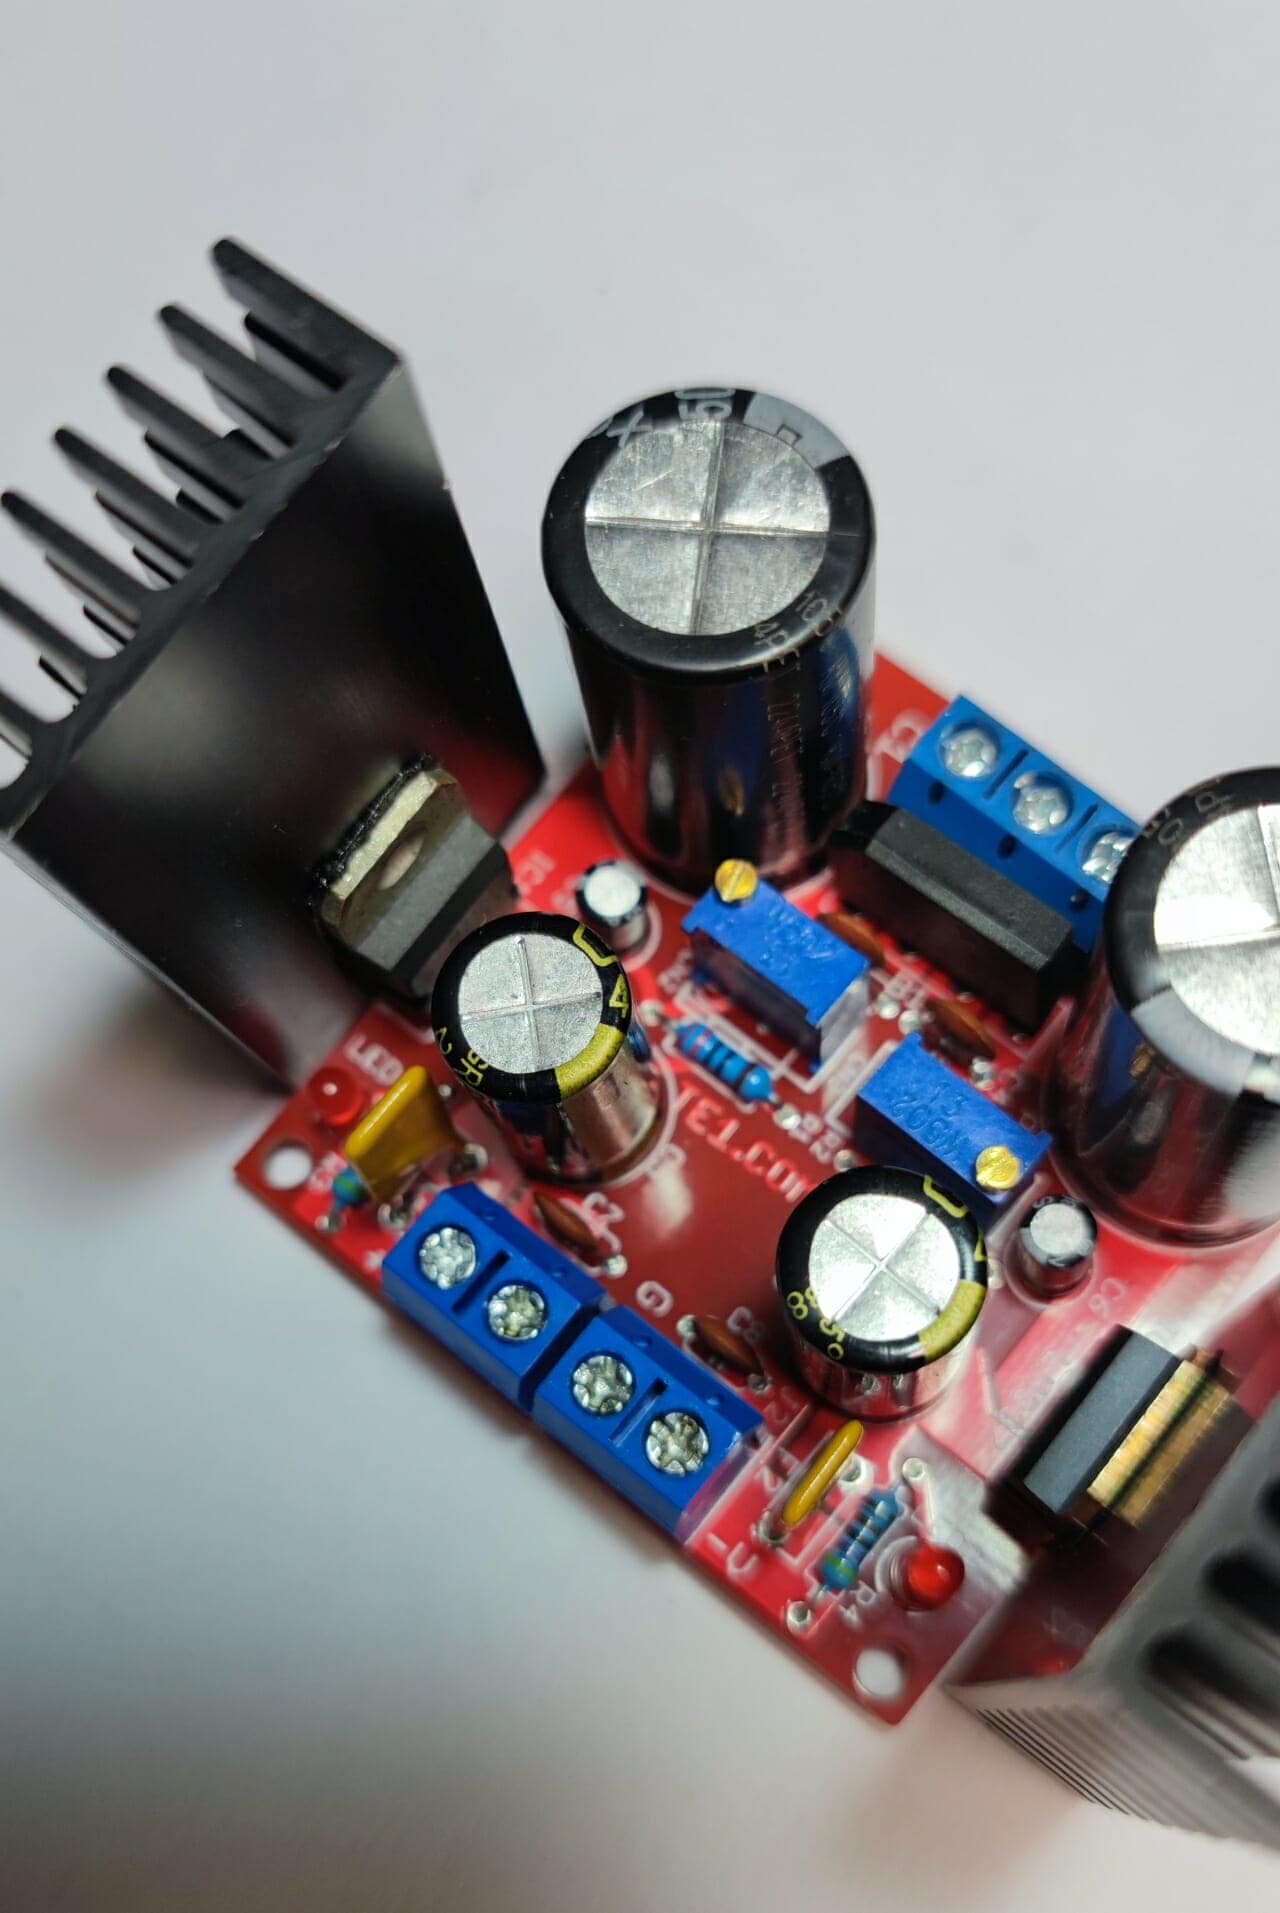 Adjustable Voltage Regulator  How it works, Application & Advantages